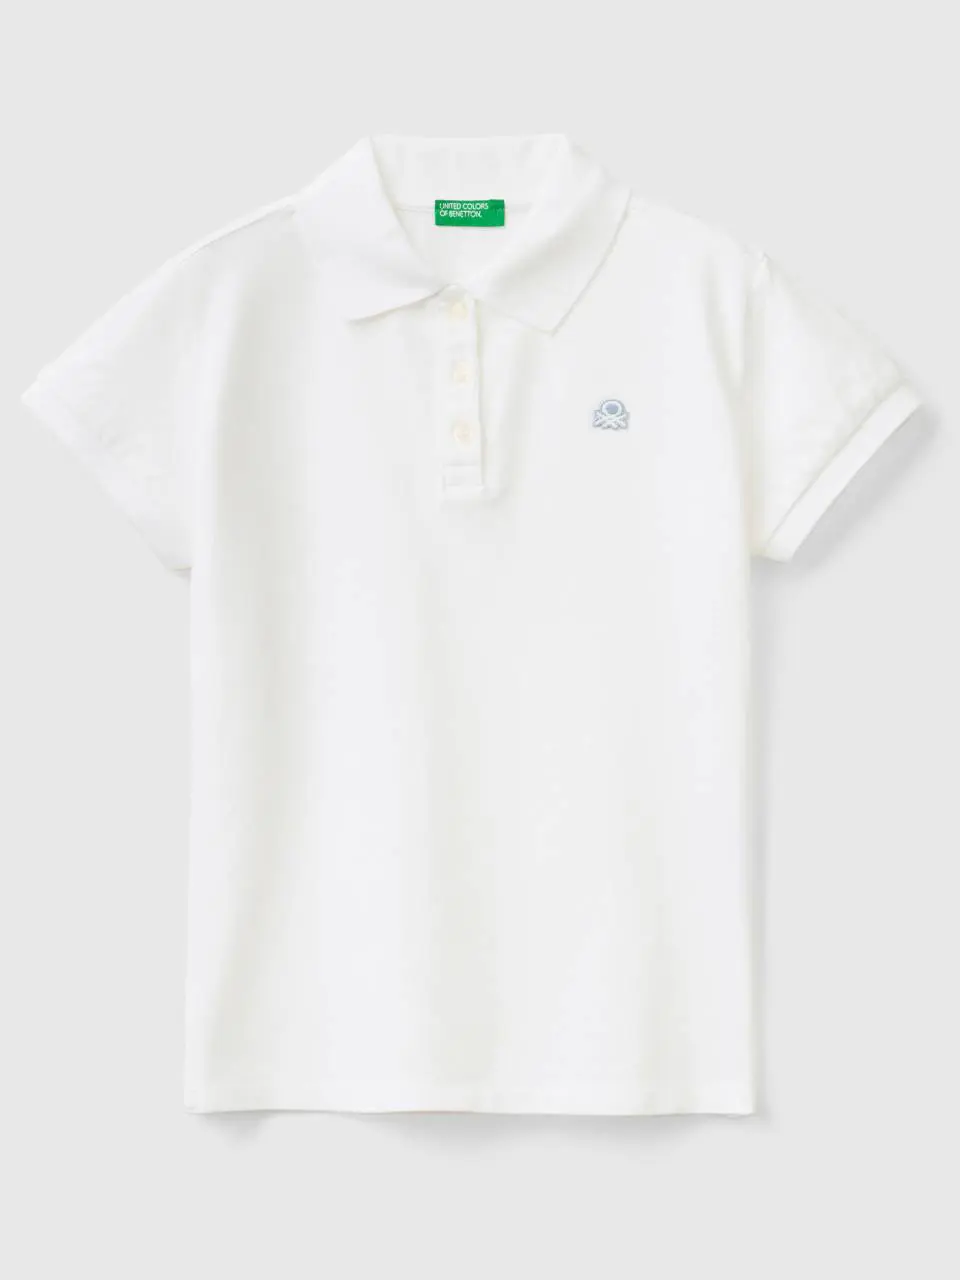 Benetton short sleeve polo in organic cotton. 1